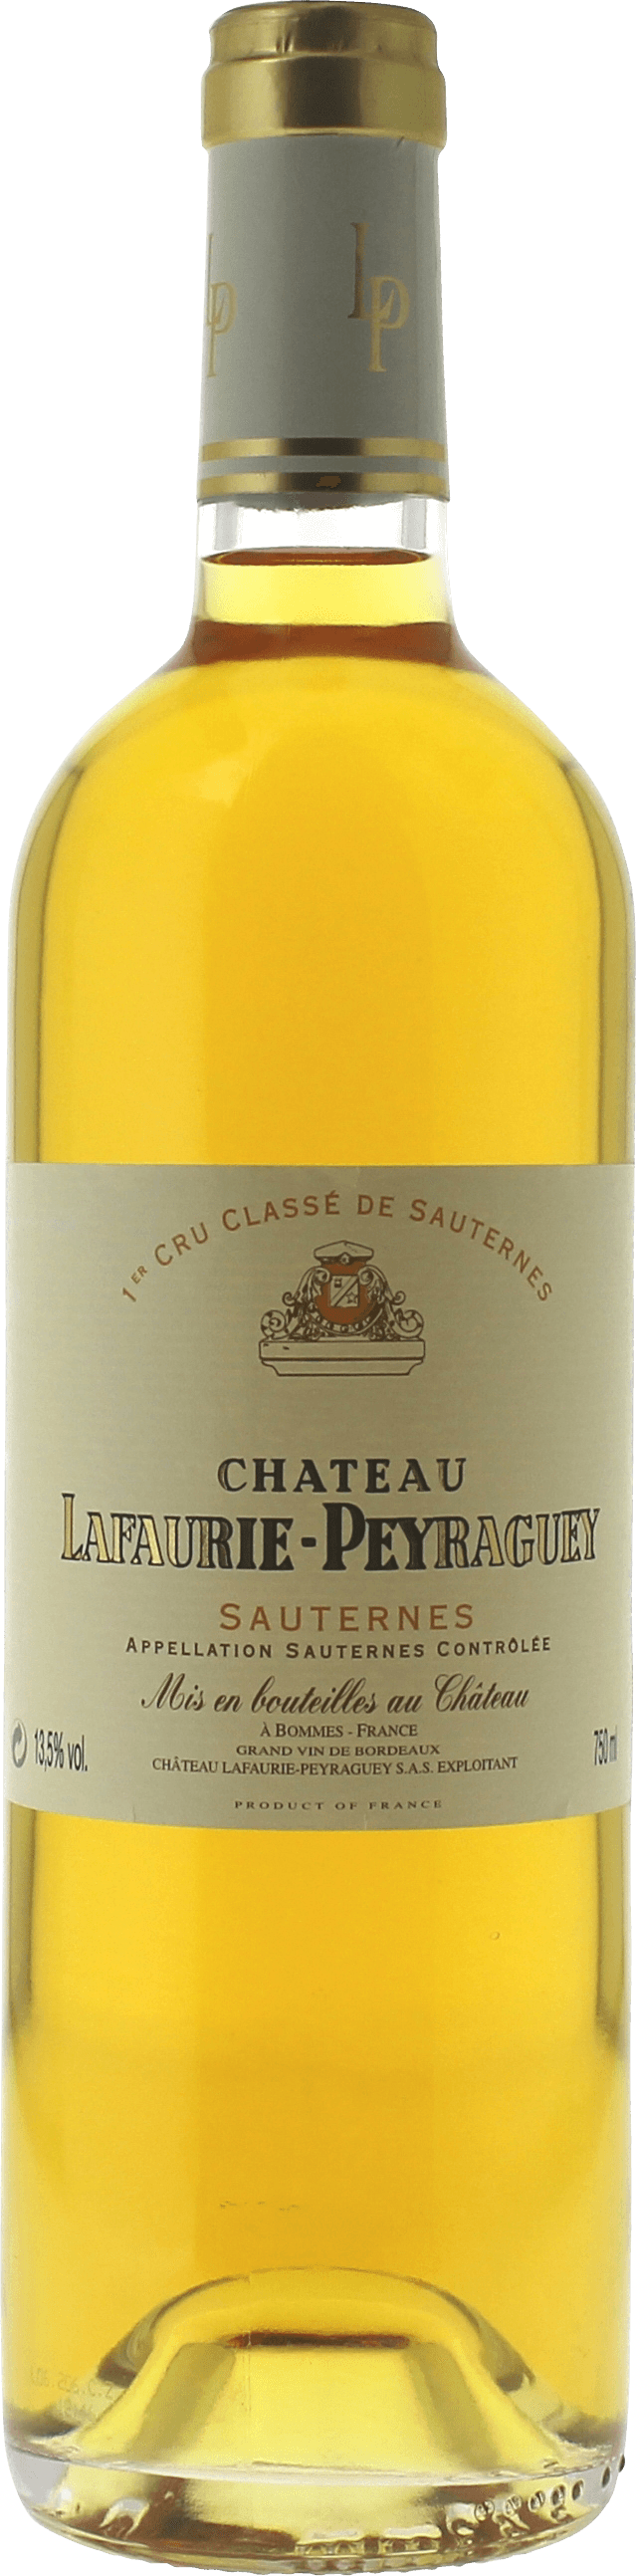 Lafaurie peyraguey 1982  Sauternes, Bordeaux blanc